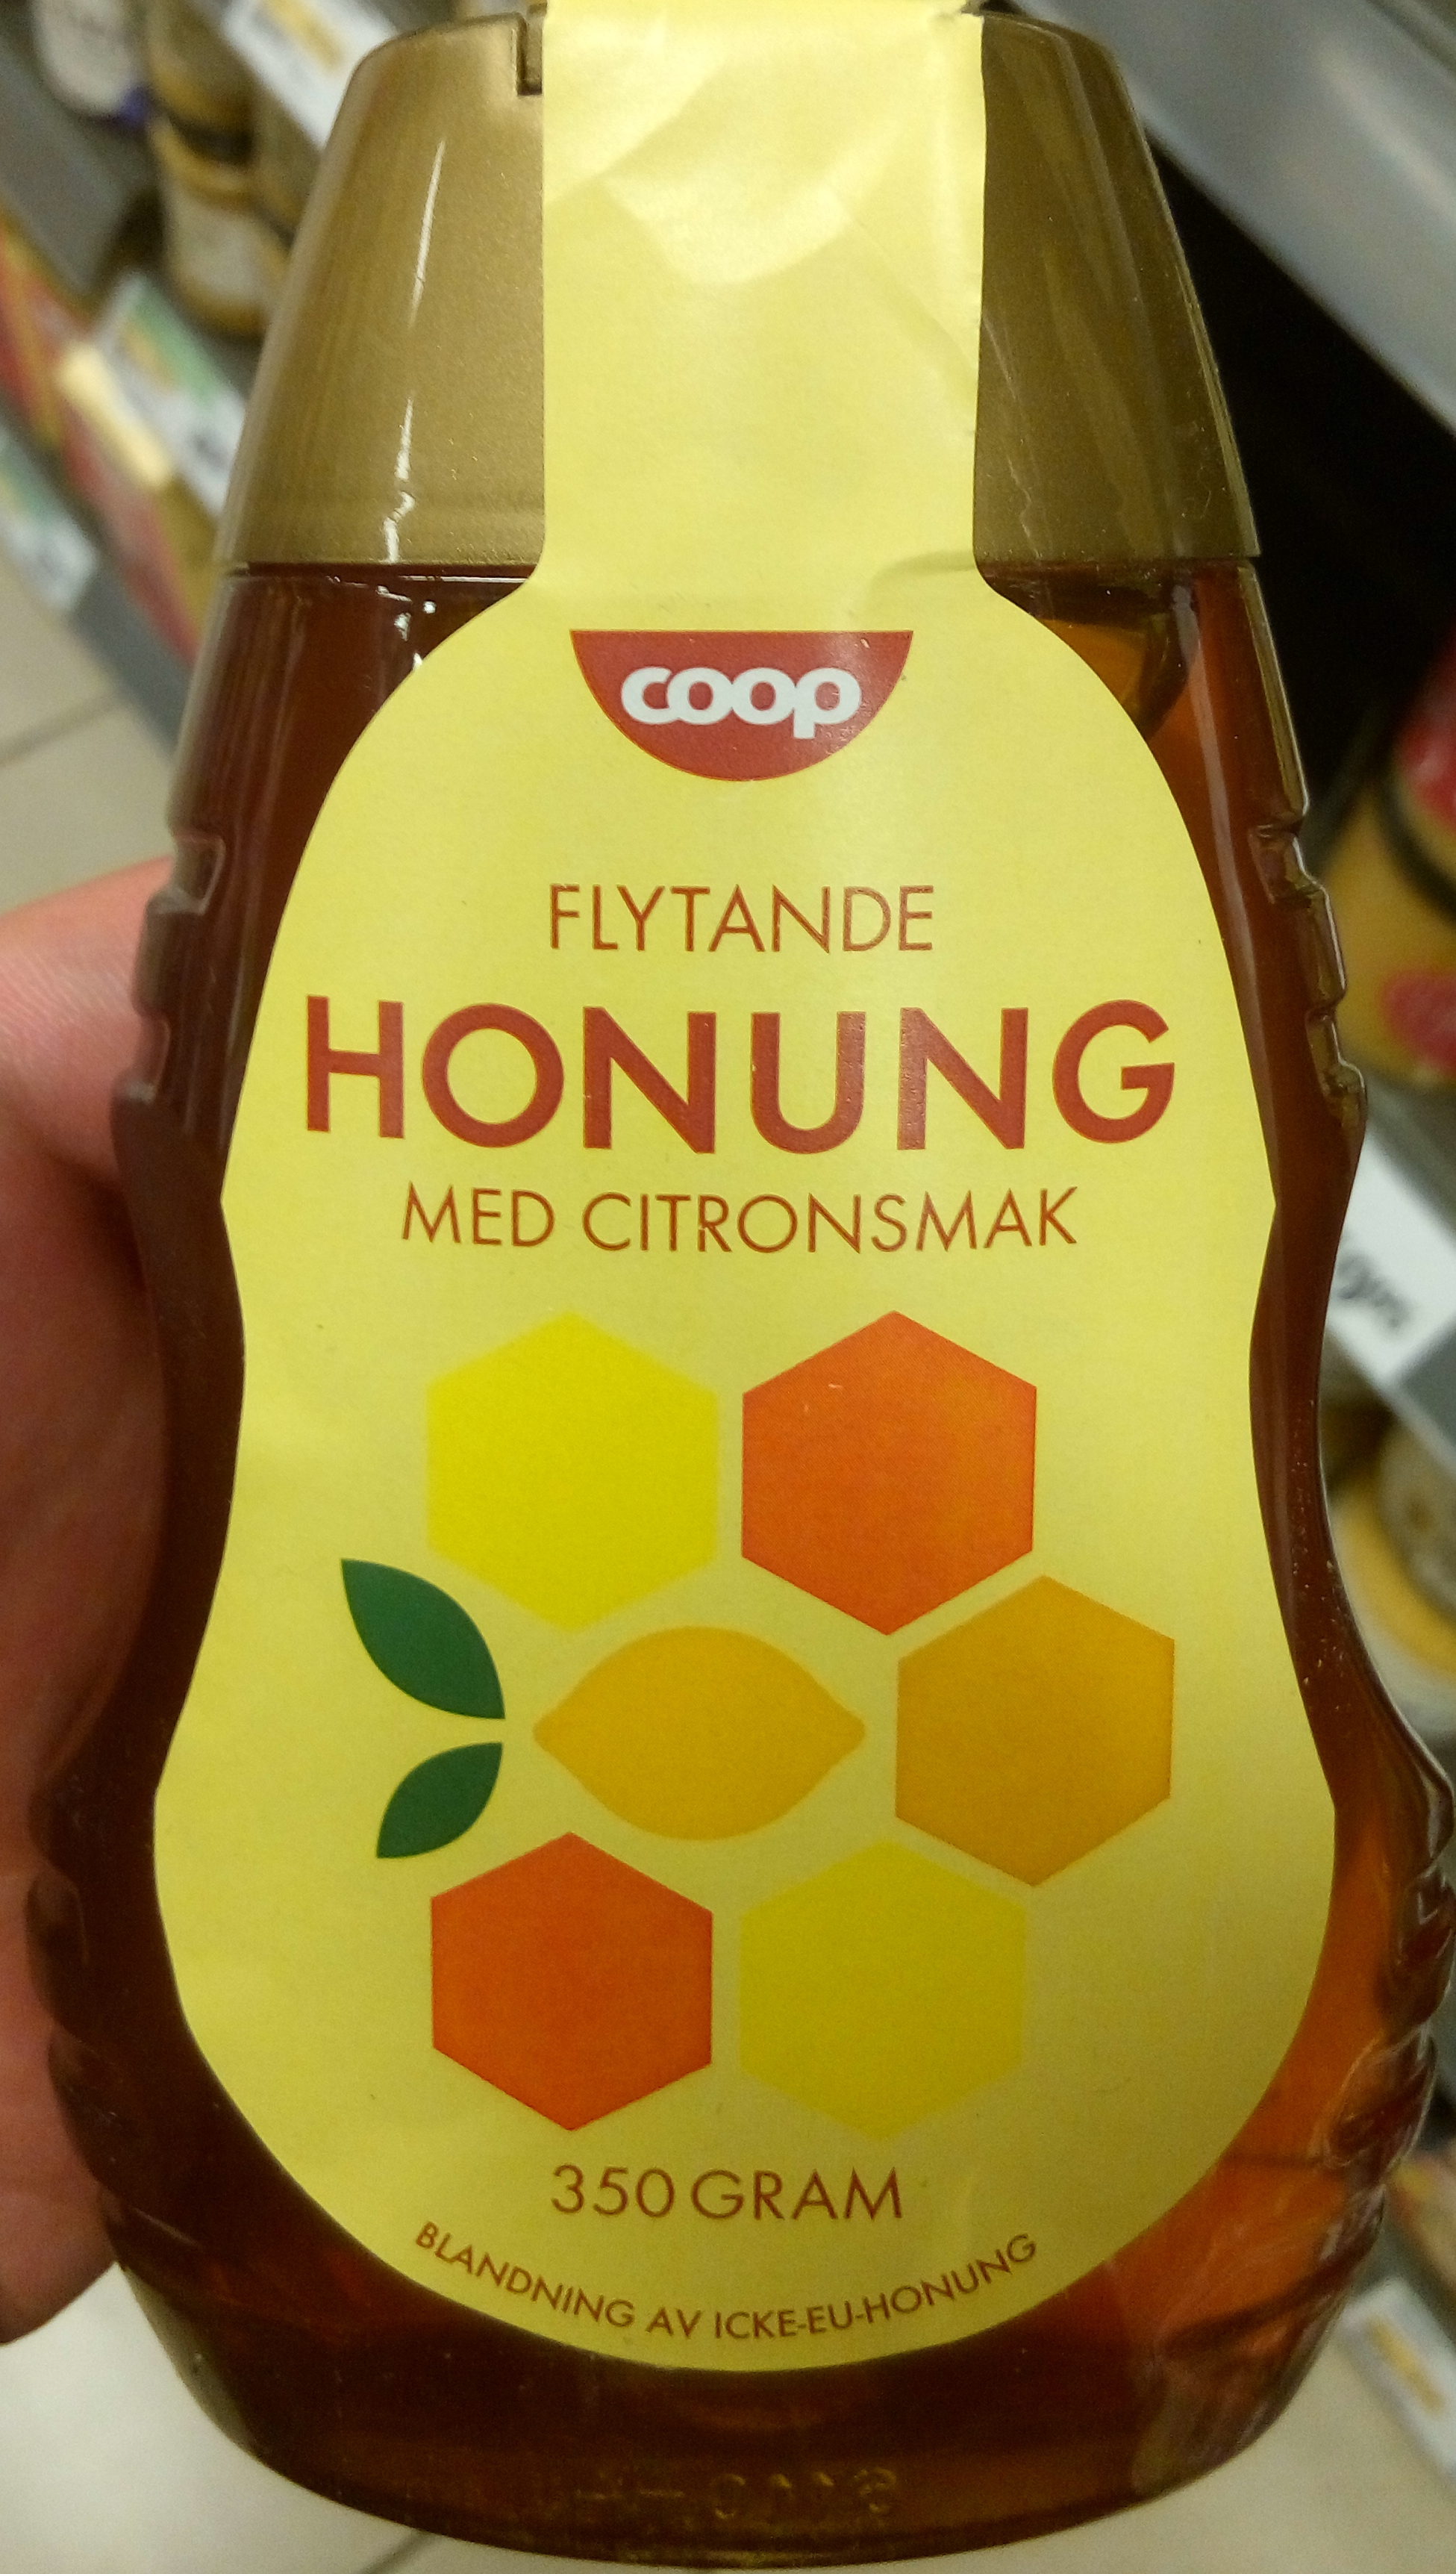 Flytande honung med citronsmak - Produkt - sv